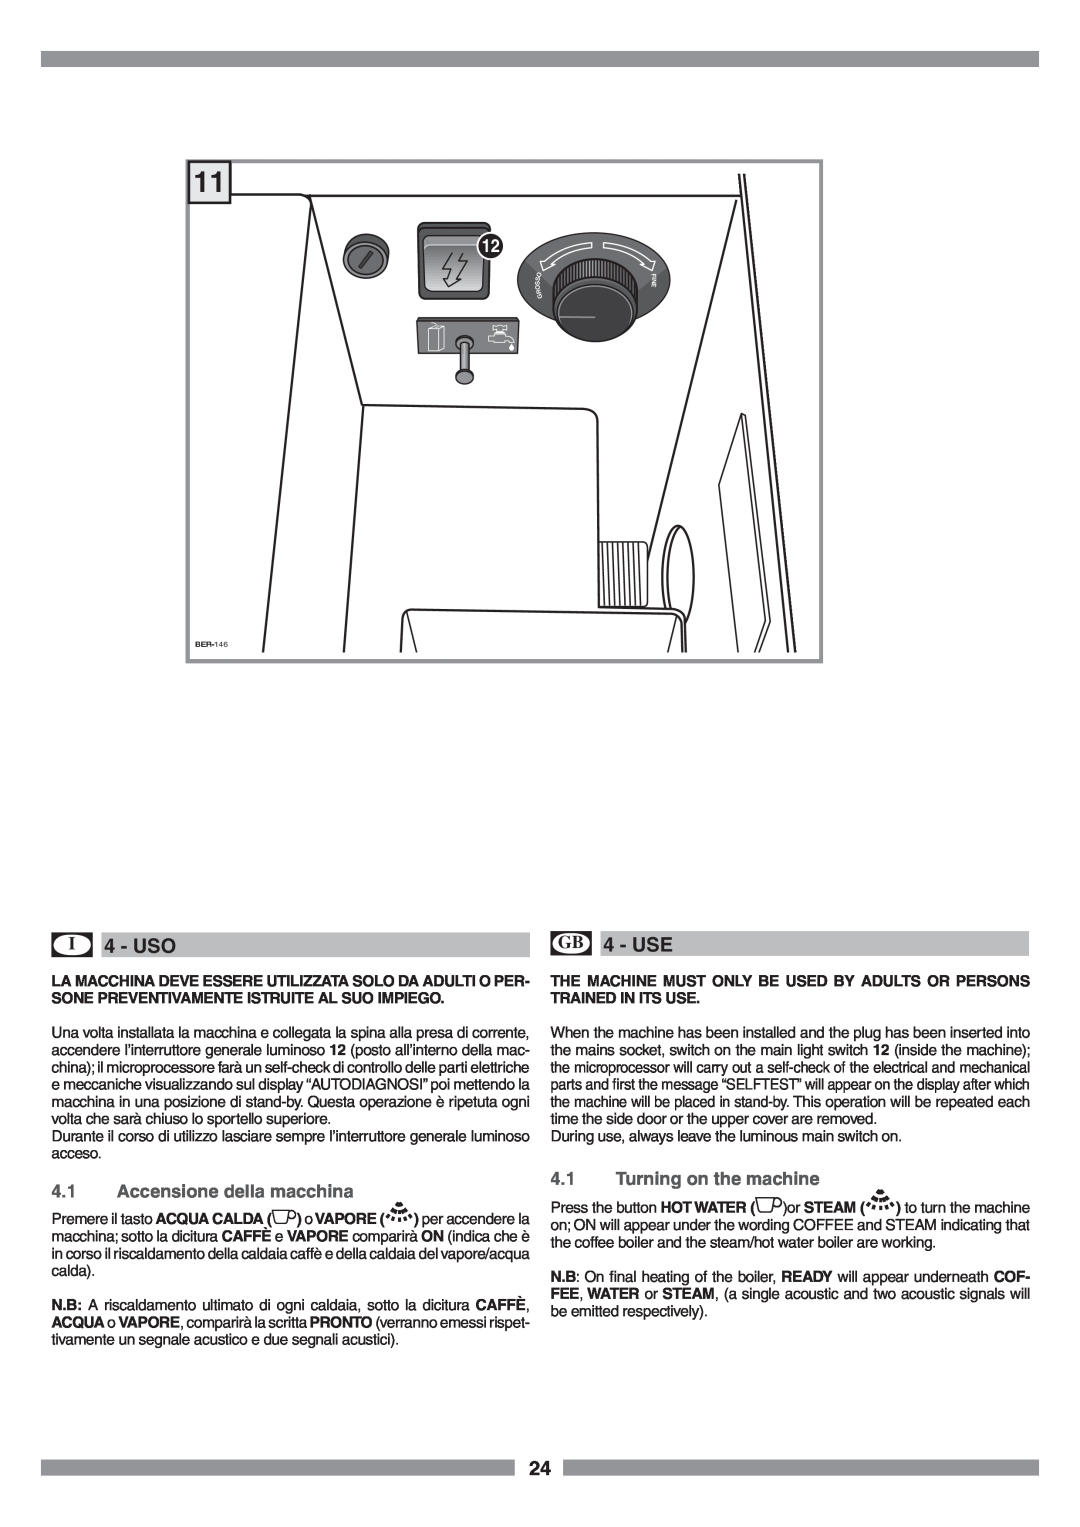 Smeg SCM1 manual I 4 - USO, GB 4 - USE, Accensione della macchina, Turning on the machine 